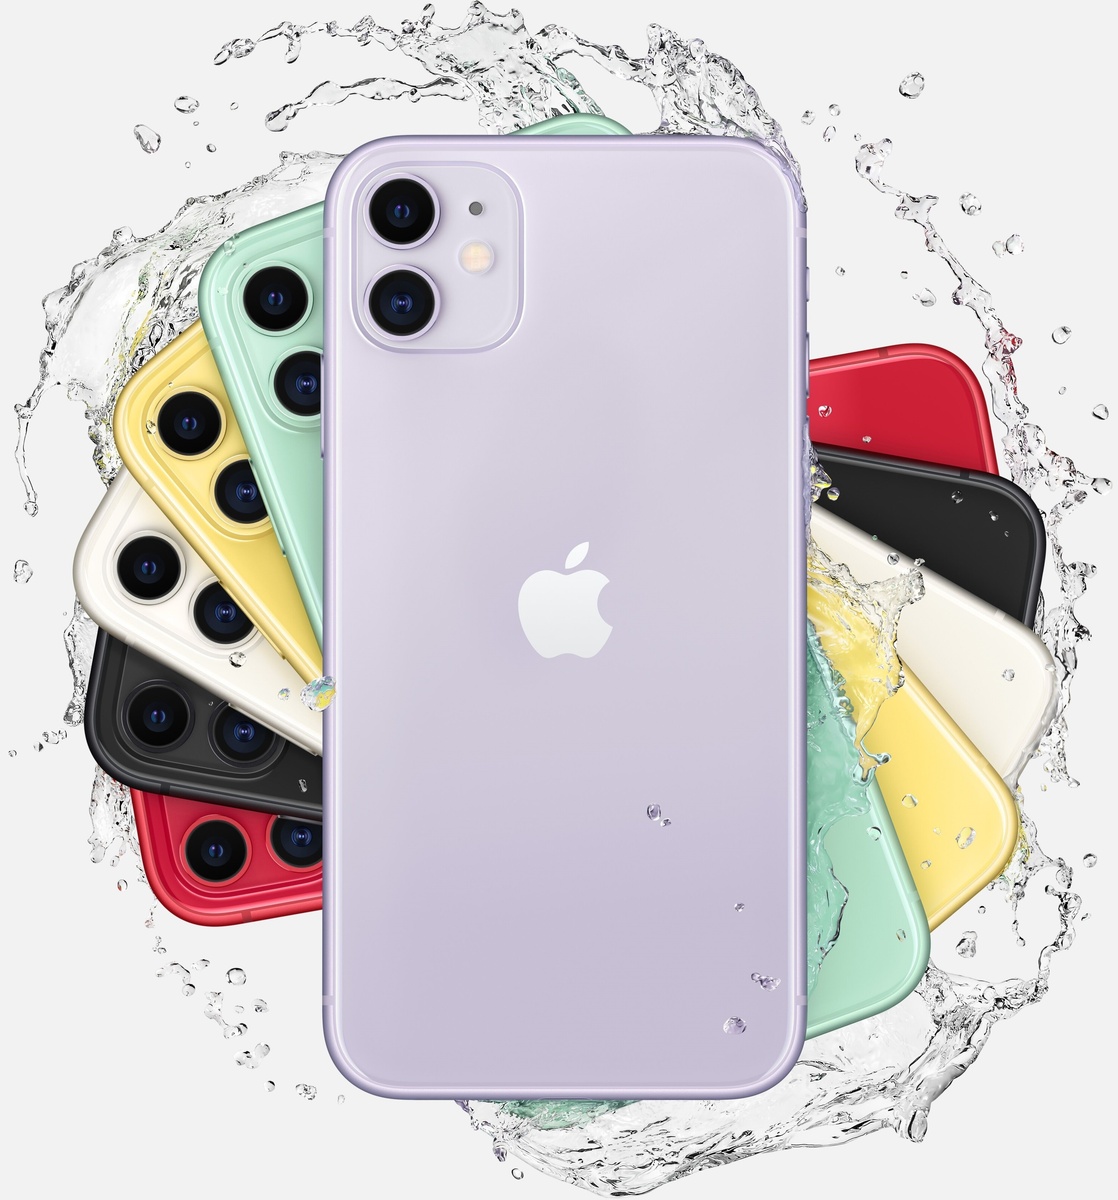 iPhone 11 Dual 64 Purple MWN52